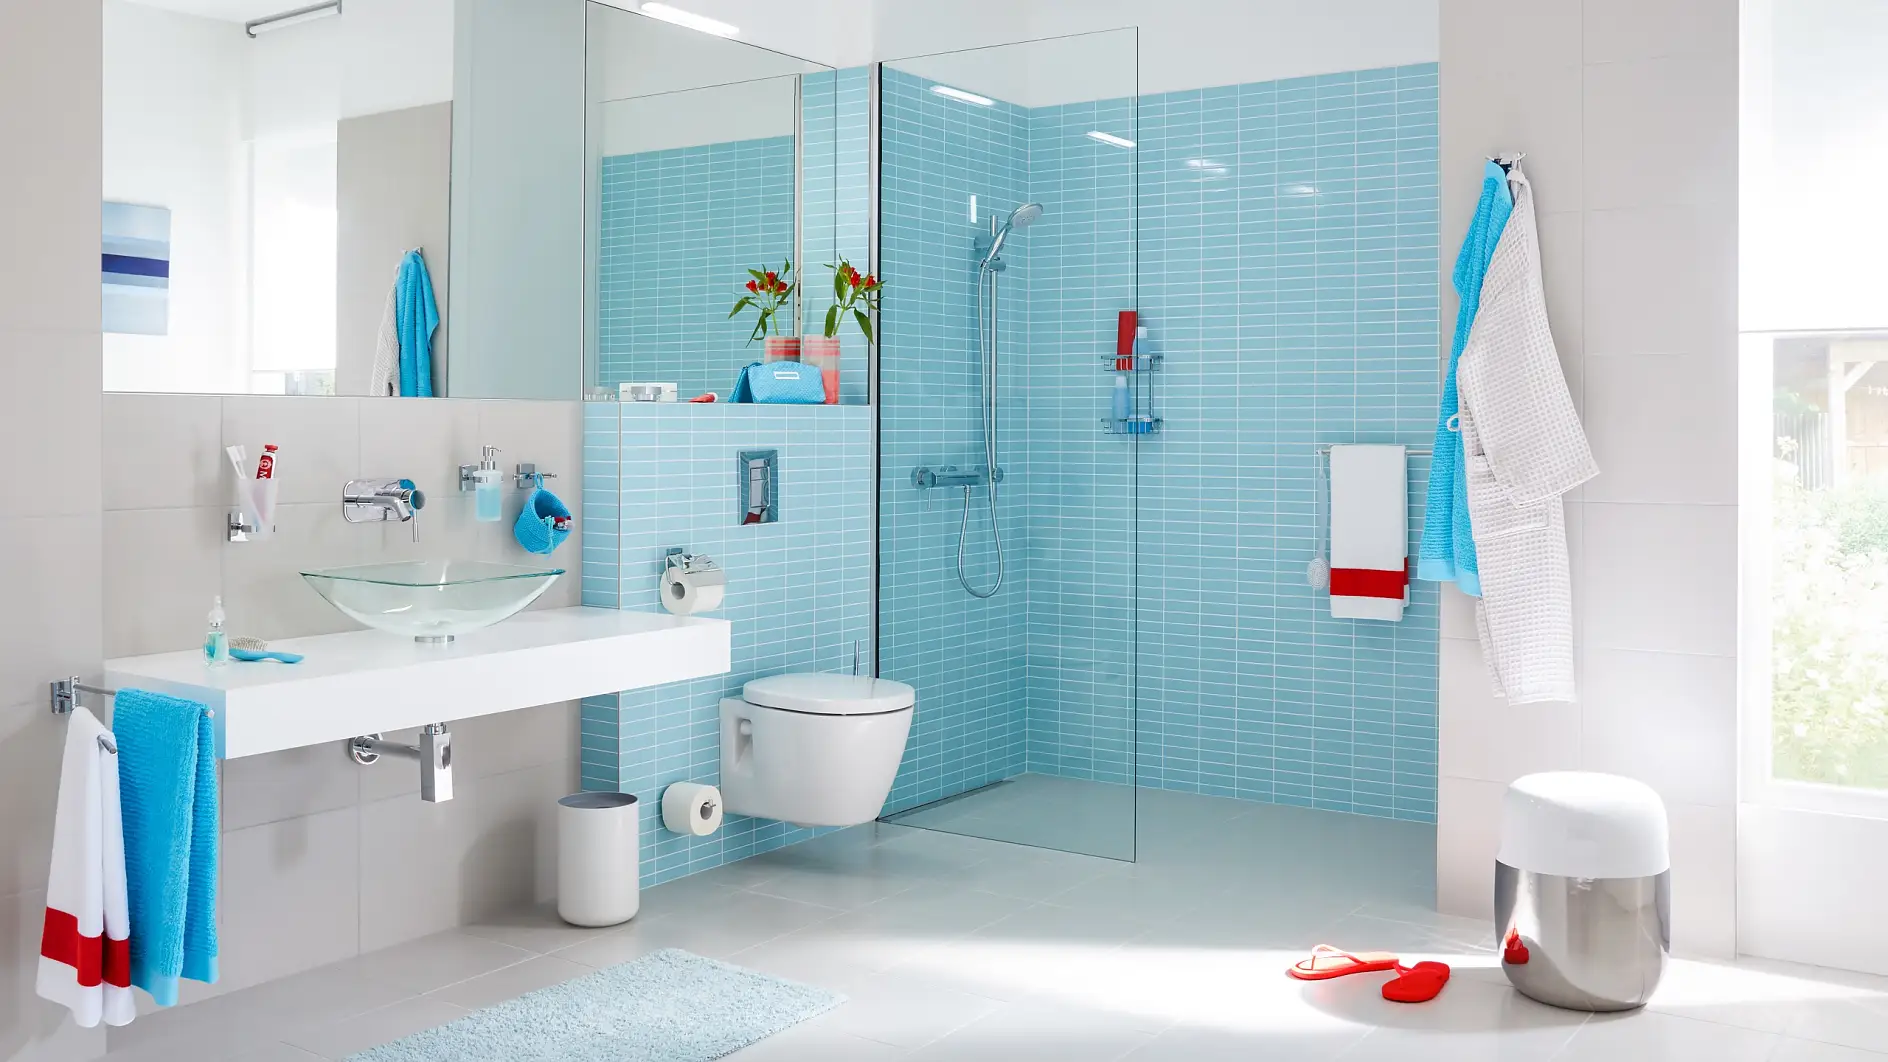 Un design fonctionnel pour faciliter votre routine quotidienne et le nettoyage de vos surfaces.